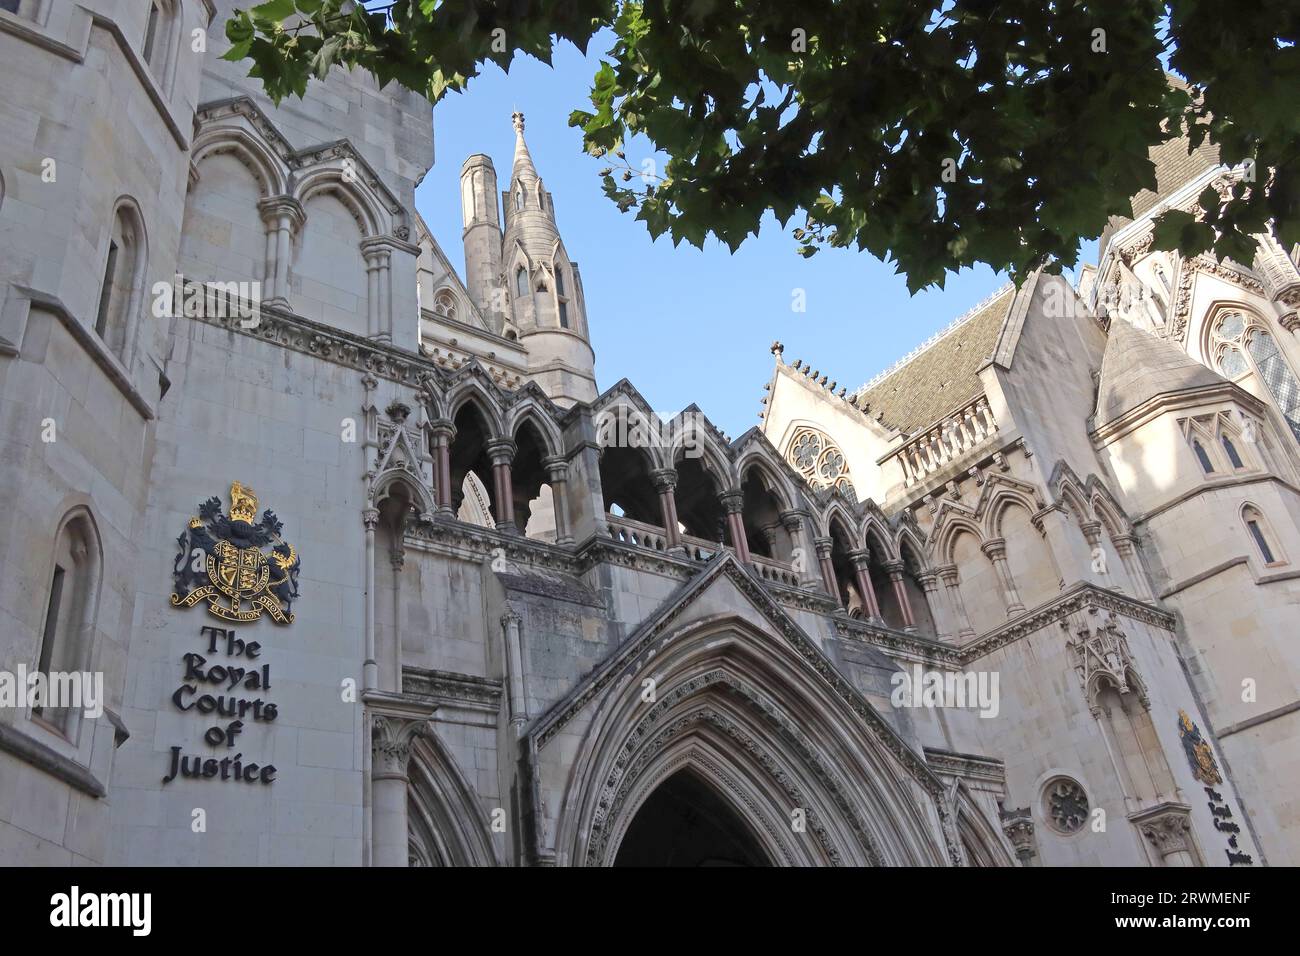 En dehors des cours royales de justice, haute cour - Strand, Holborn, Westminster, Londres, Angleterre, ROYAUME-UNI, WC2A 2LL Banque D'Images